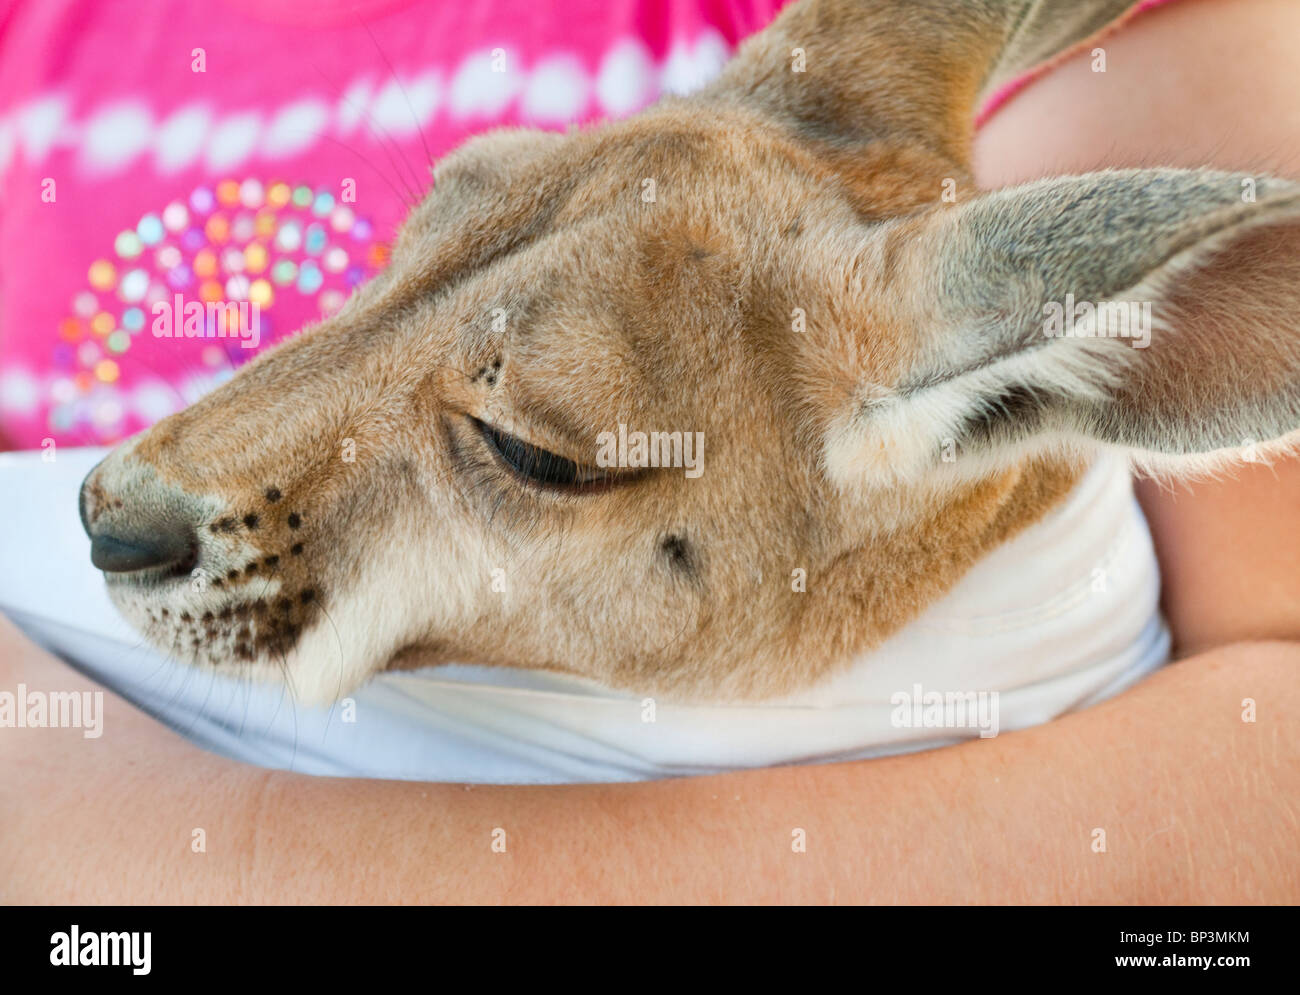 Kangaroo joey. Stock Photo